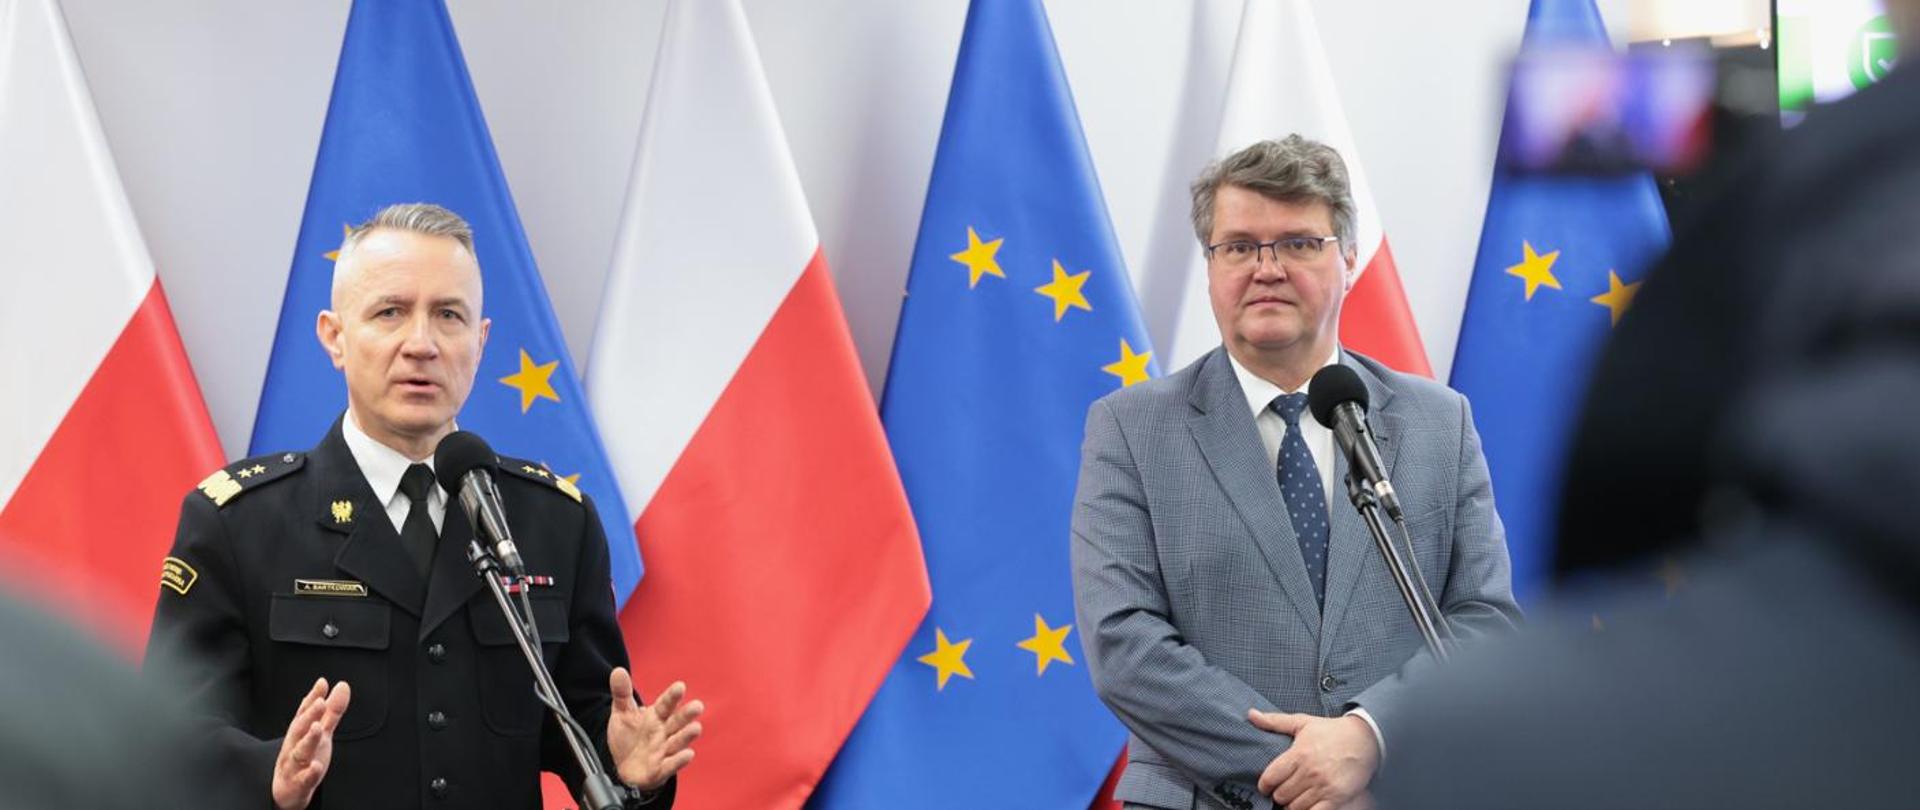 Wiceminister Maciej Wąsika oraz gen. brygadier Andrzej Bartkowiak komendanta głównego PSP podczas konferencji. W tle flagi Polski oraz UE.